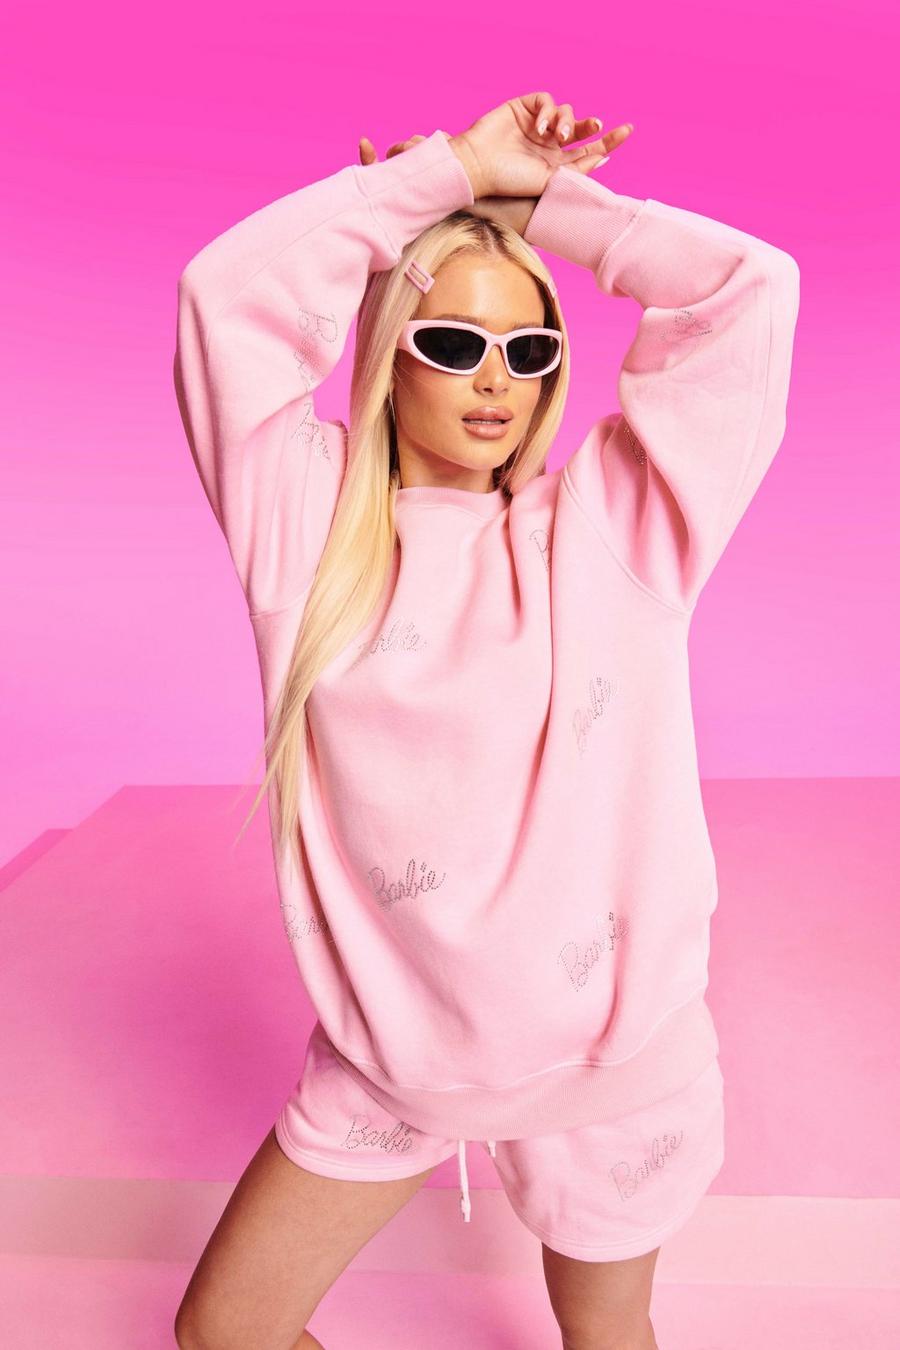 Pantalón corto deportivo de Barbie con eslogan de incrustaciones, Baby pink rosa